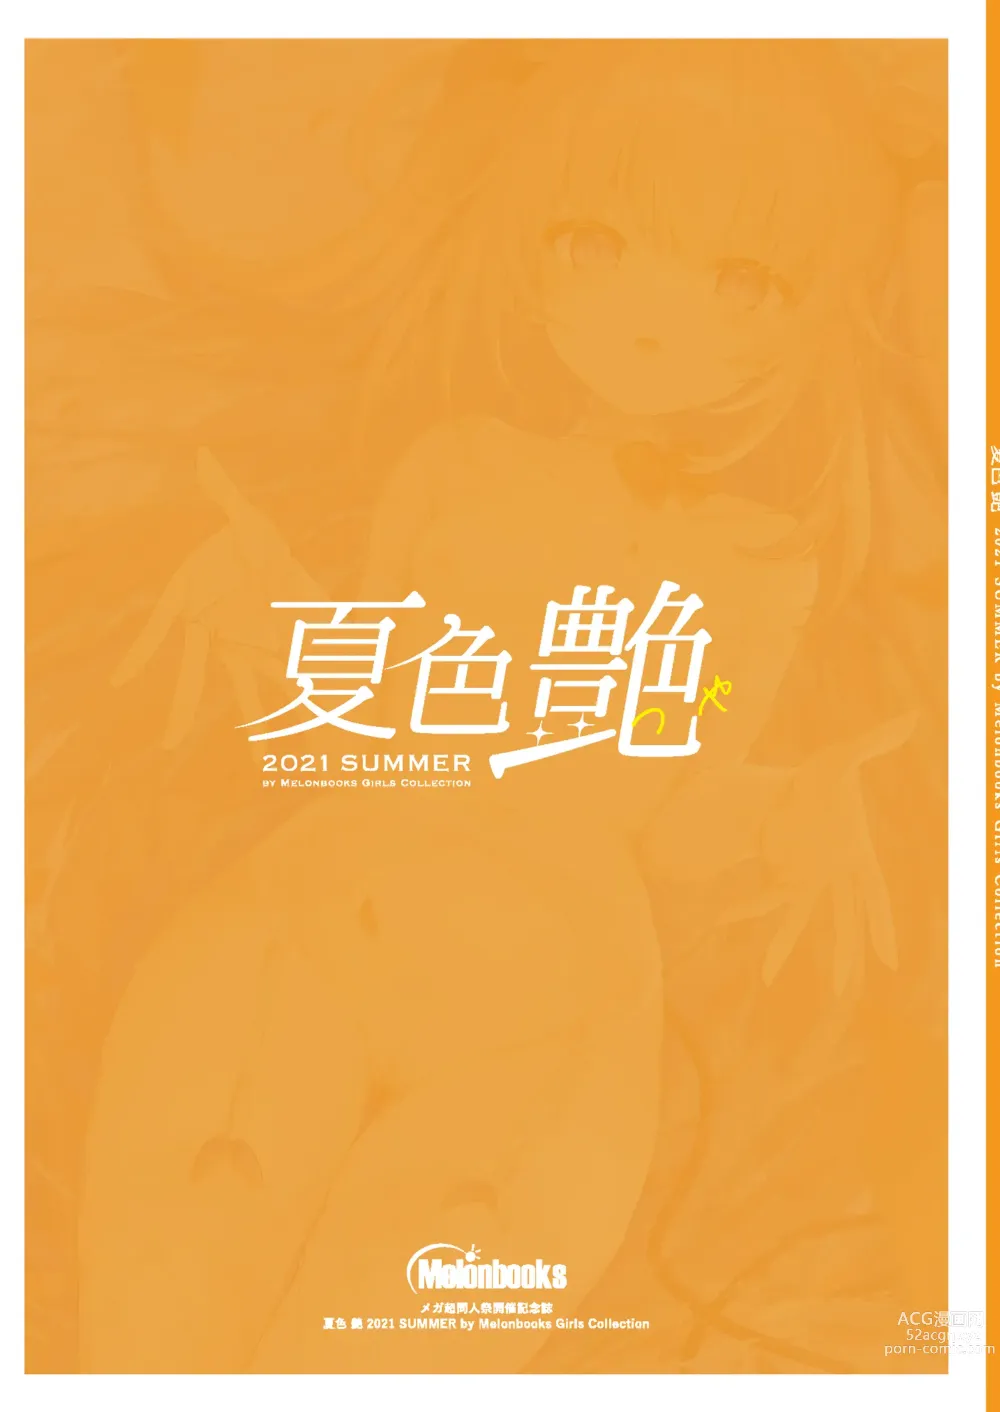 Page 92 of manga Girls Collection 2021 Summer - Natsuiro Tsuya